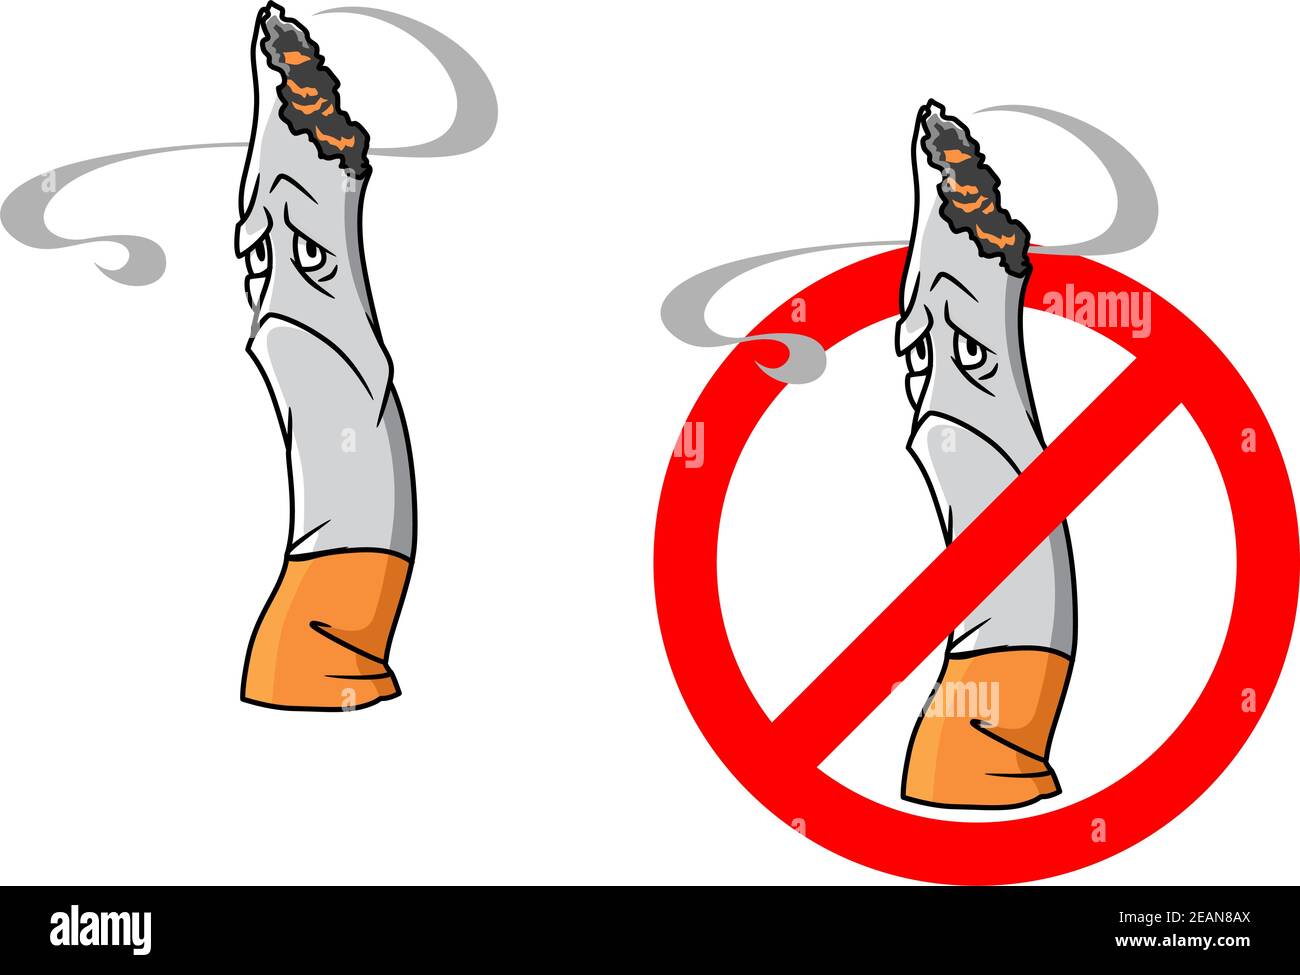 Caricature mégots de cigarettes avec un panneau d'arrêt pour les soins de santé ou une autre concept social Illustration de Vecteur